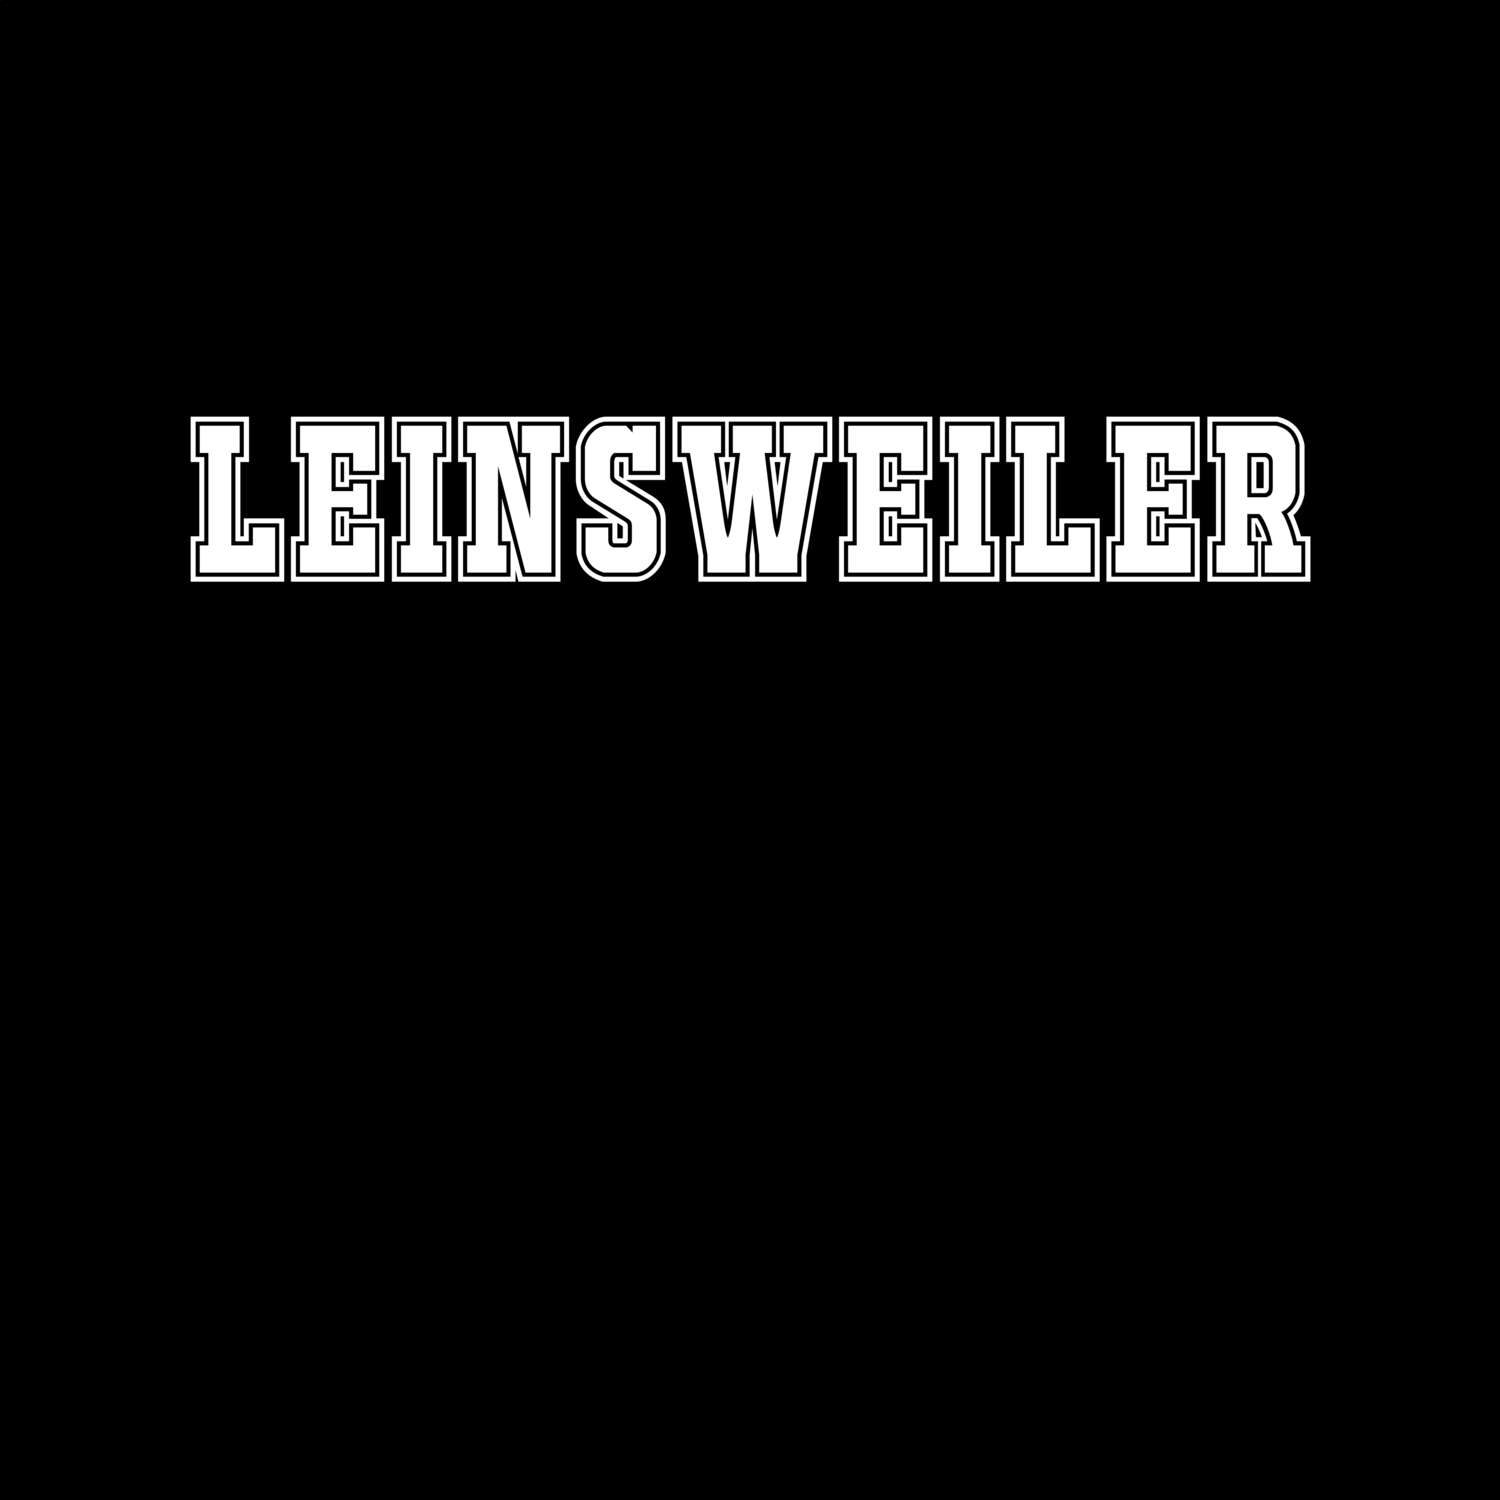 Leinsweiler T-Shirt »Classic«